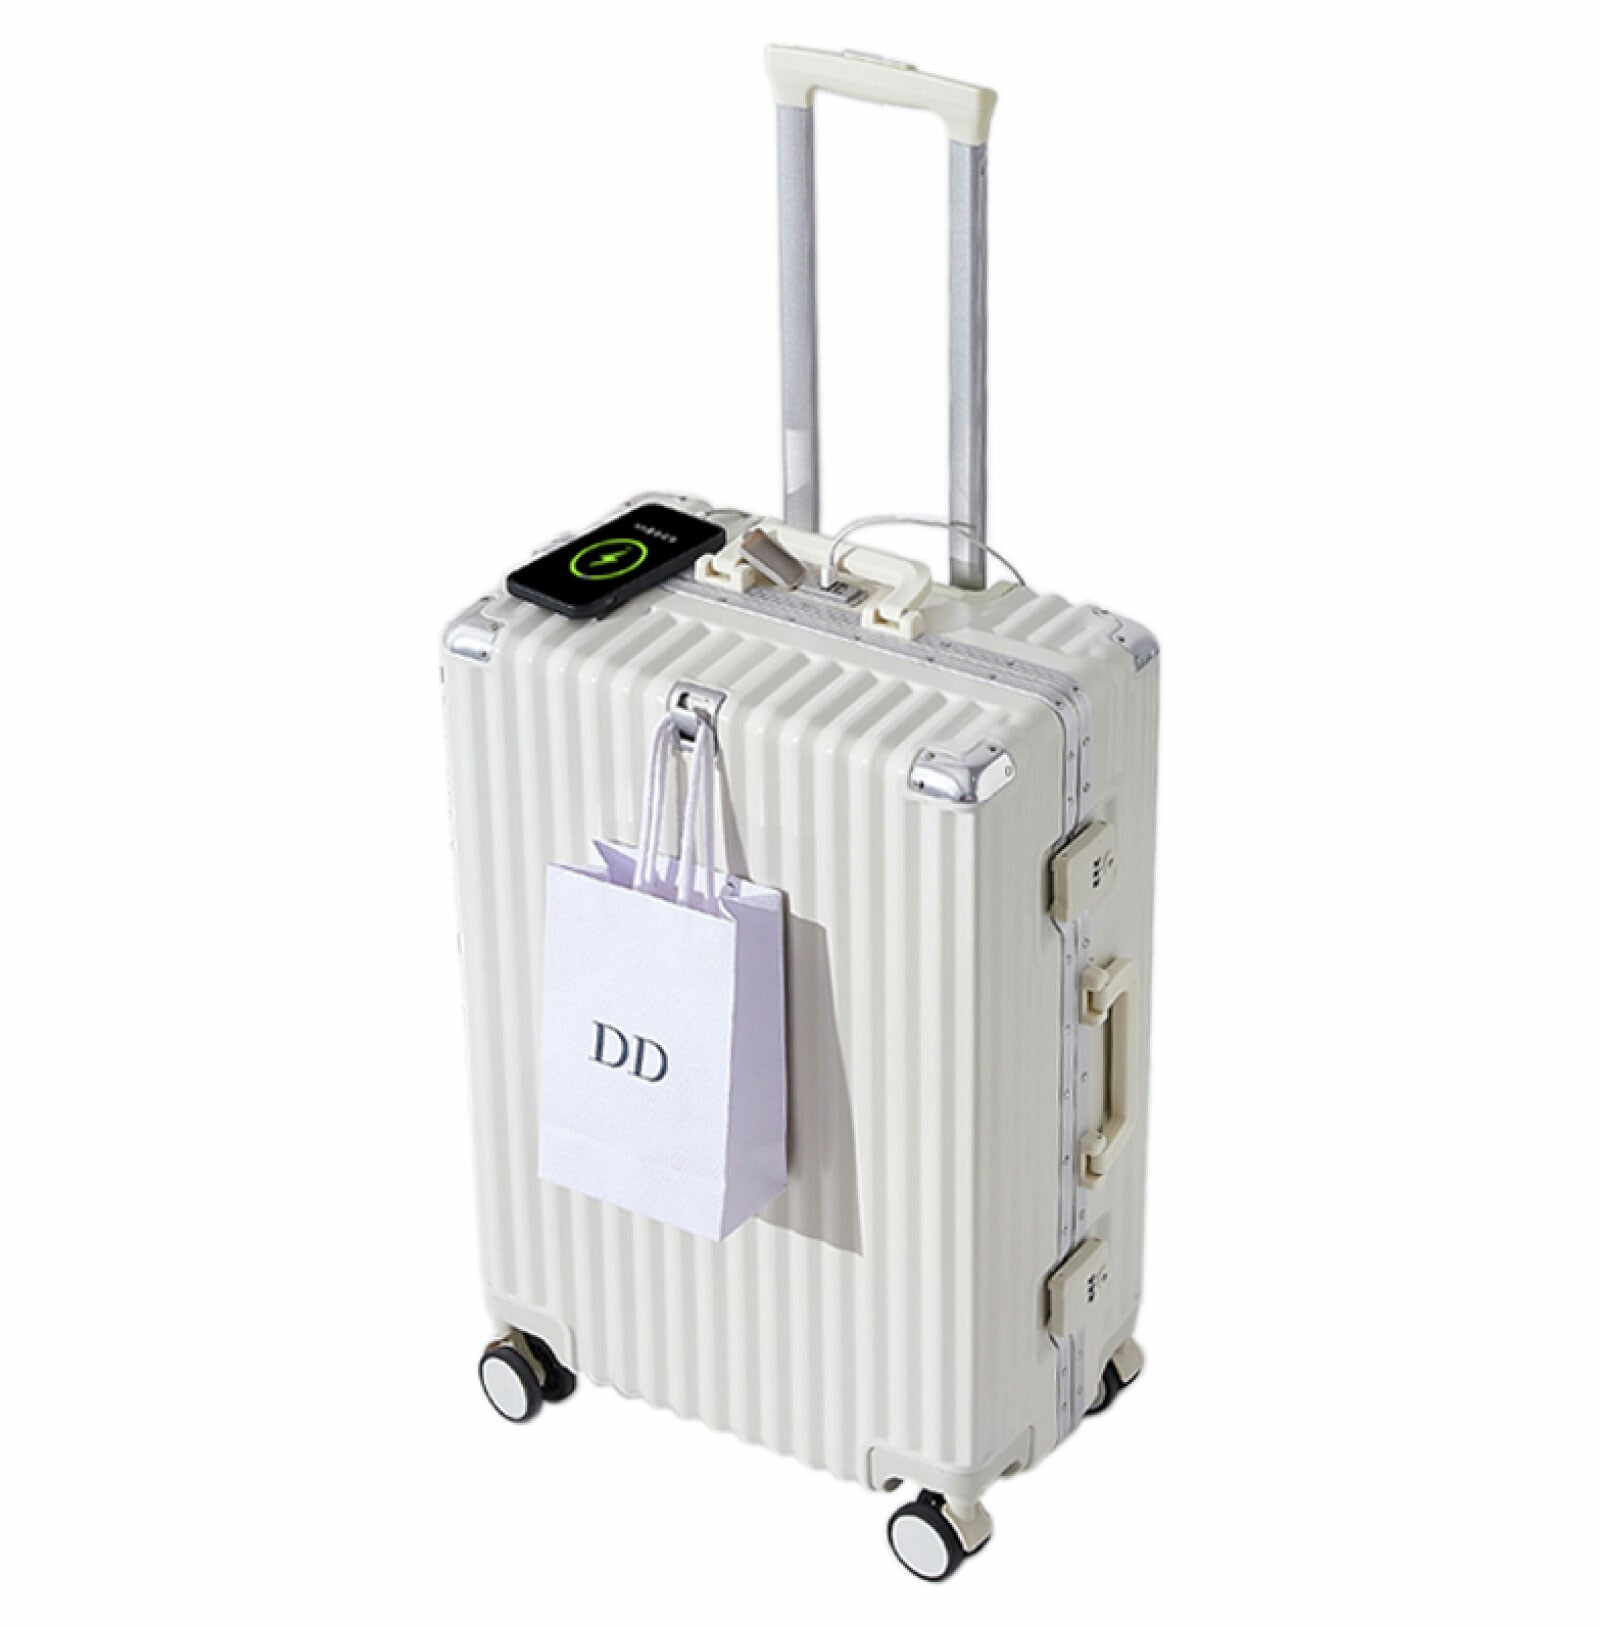 スーツケース フレームタイプ USBポート付き キャリーケース Mサイズ 66L 5カラー選ぶ 4-7日用 泊まる カップホルダー付き 軽量 大容量 多収納ポケット トランク 修学旅行 海外旅行 国内旅行 sc814-24